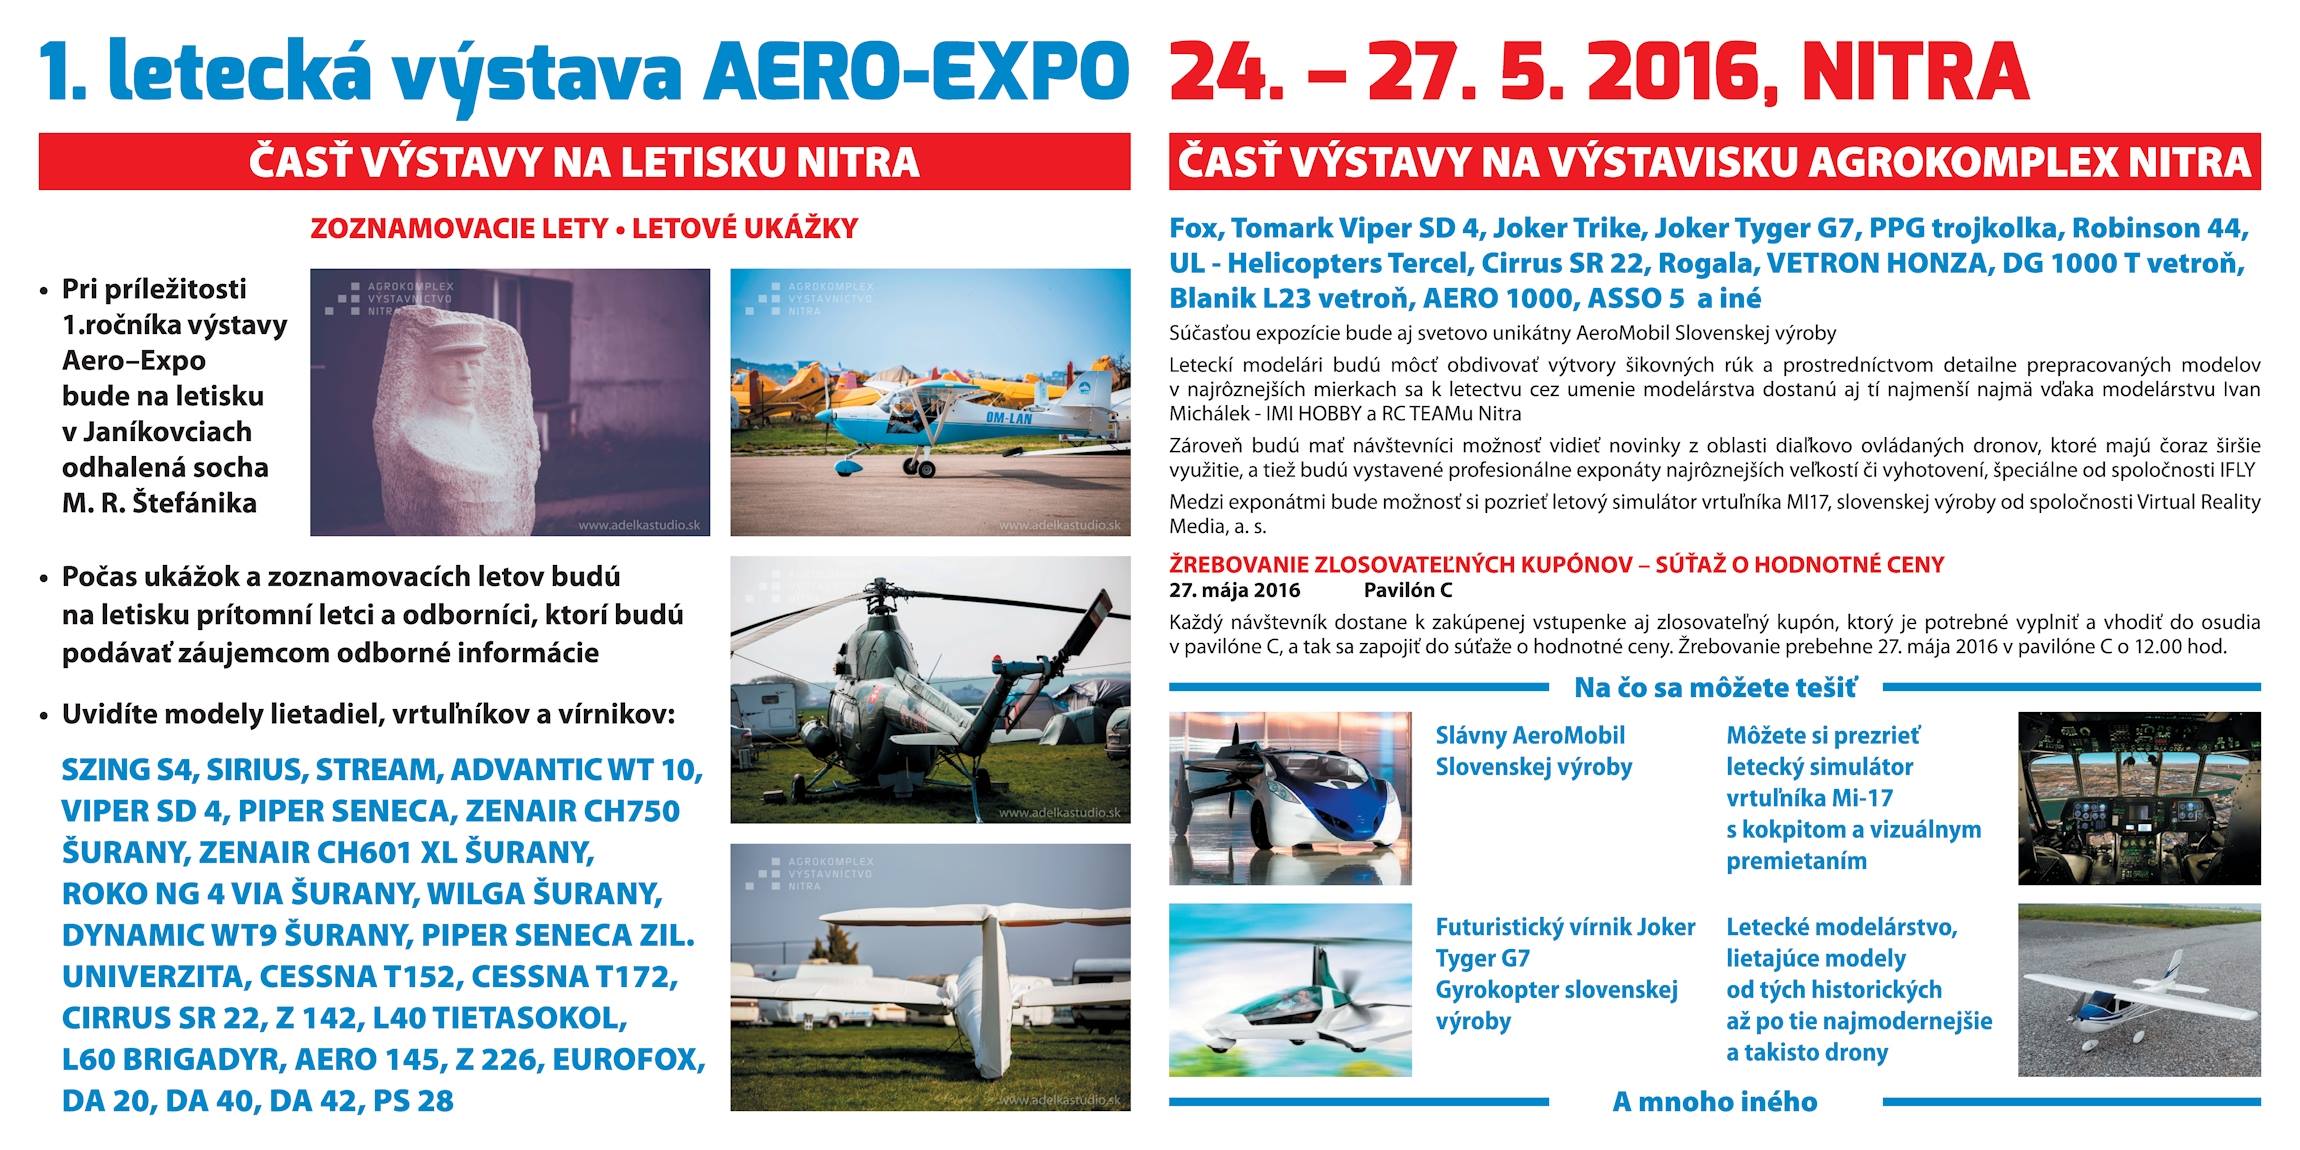 AeroExpo Nitra 2016 - plagát